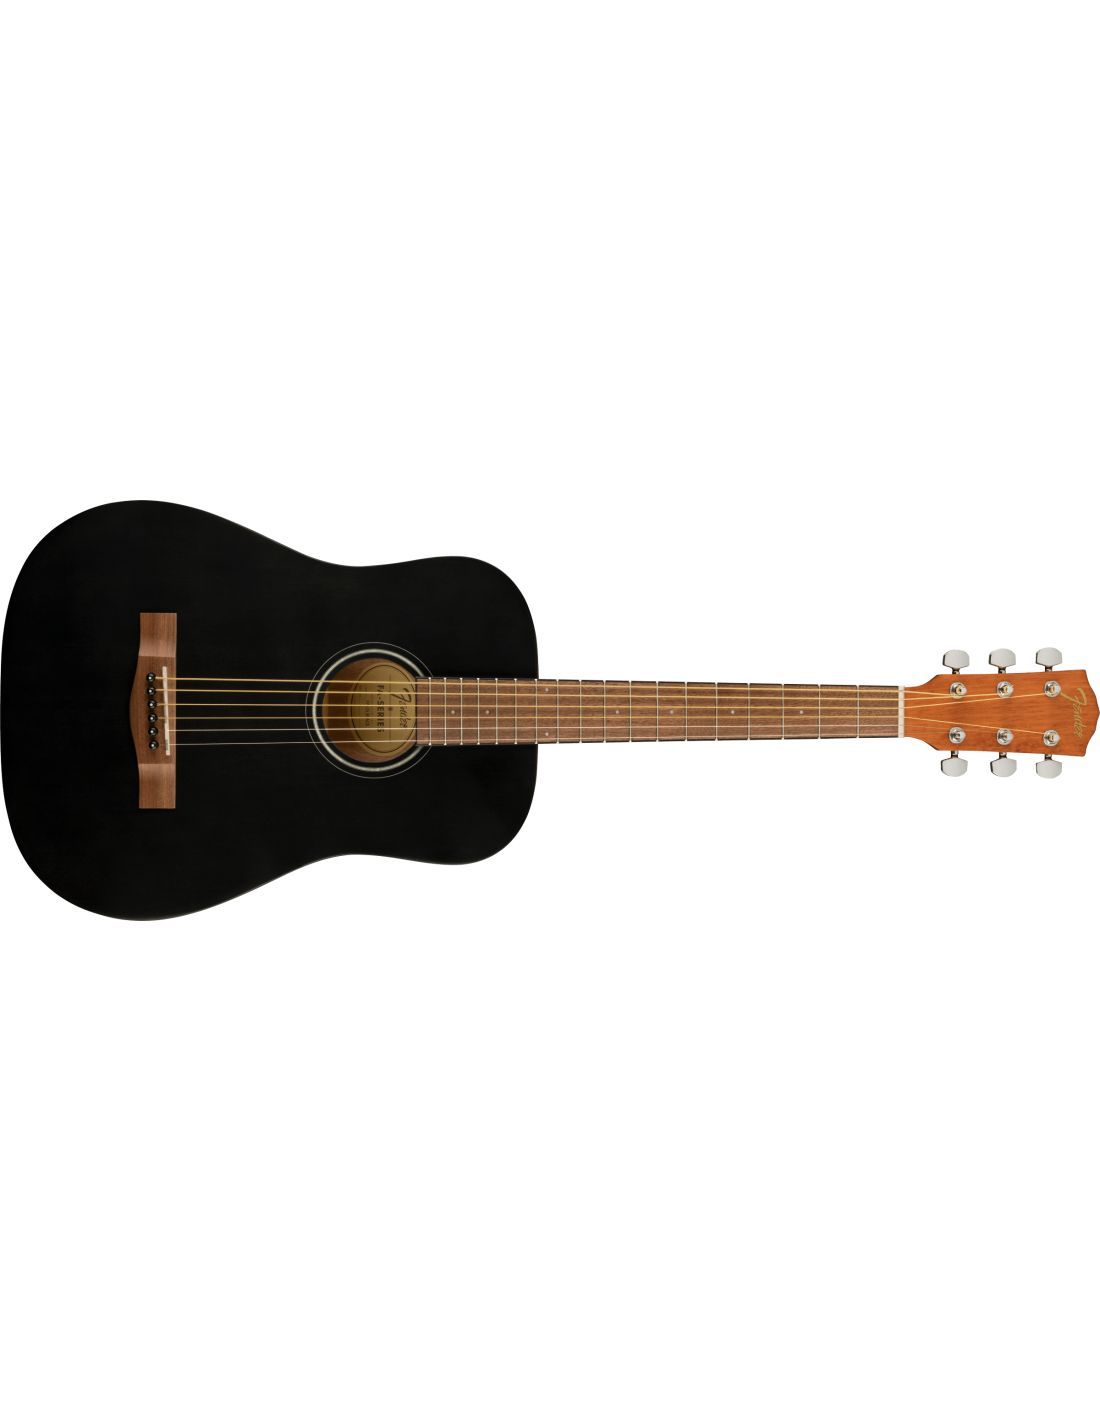 Fender FAS405 Small Body Acoustic Gig Bag, Black - Willcutt Guitars